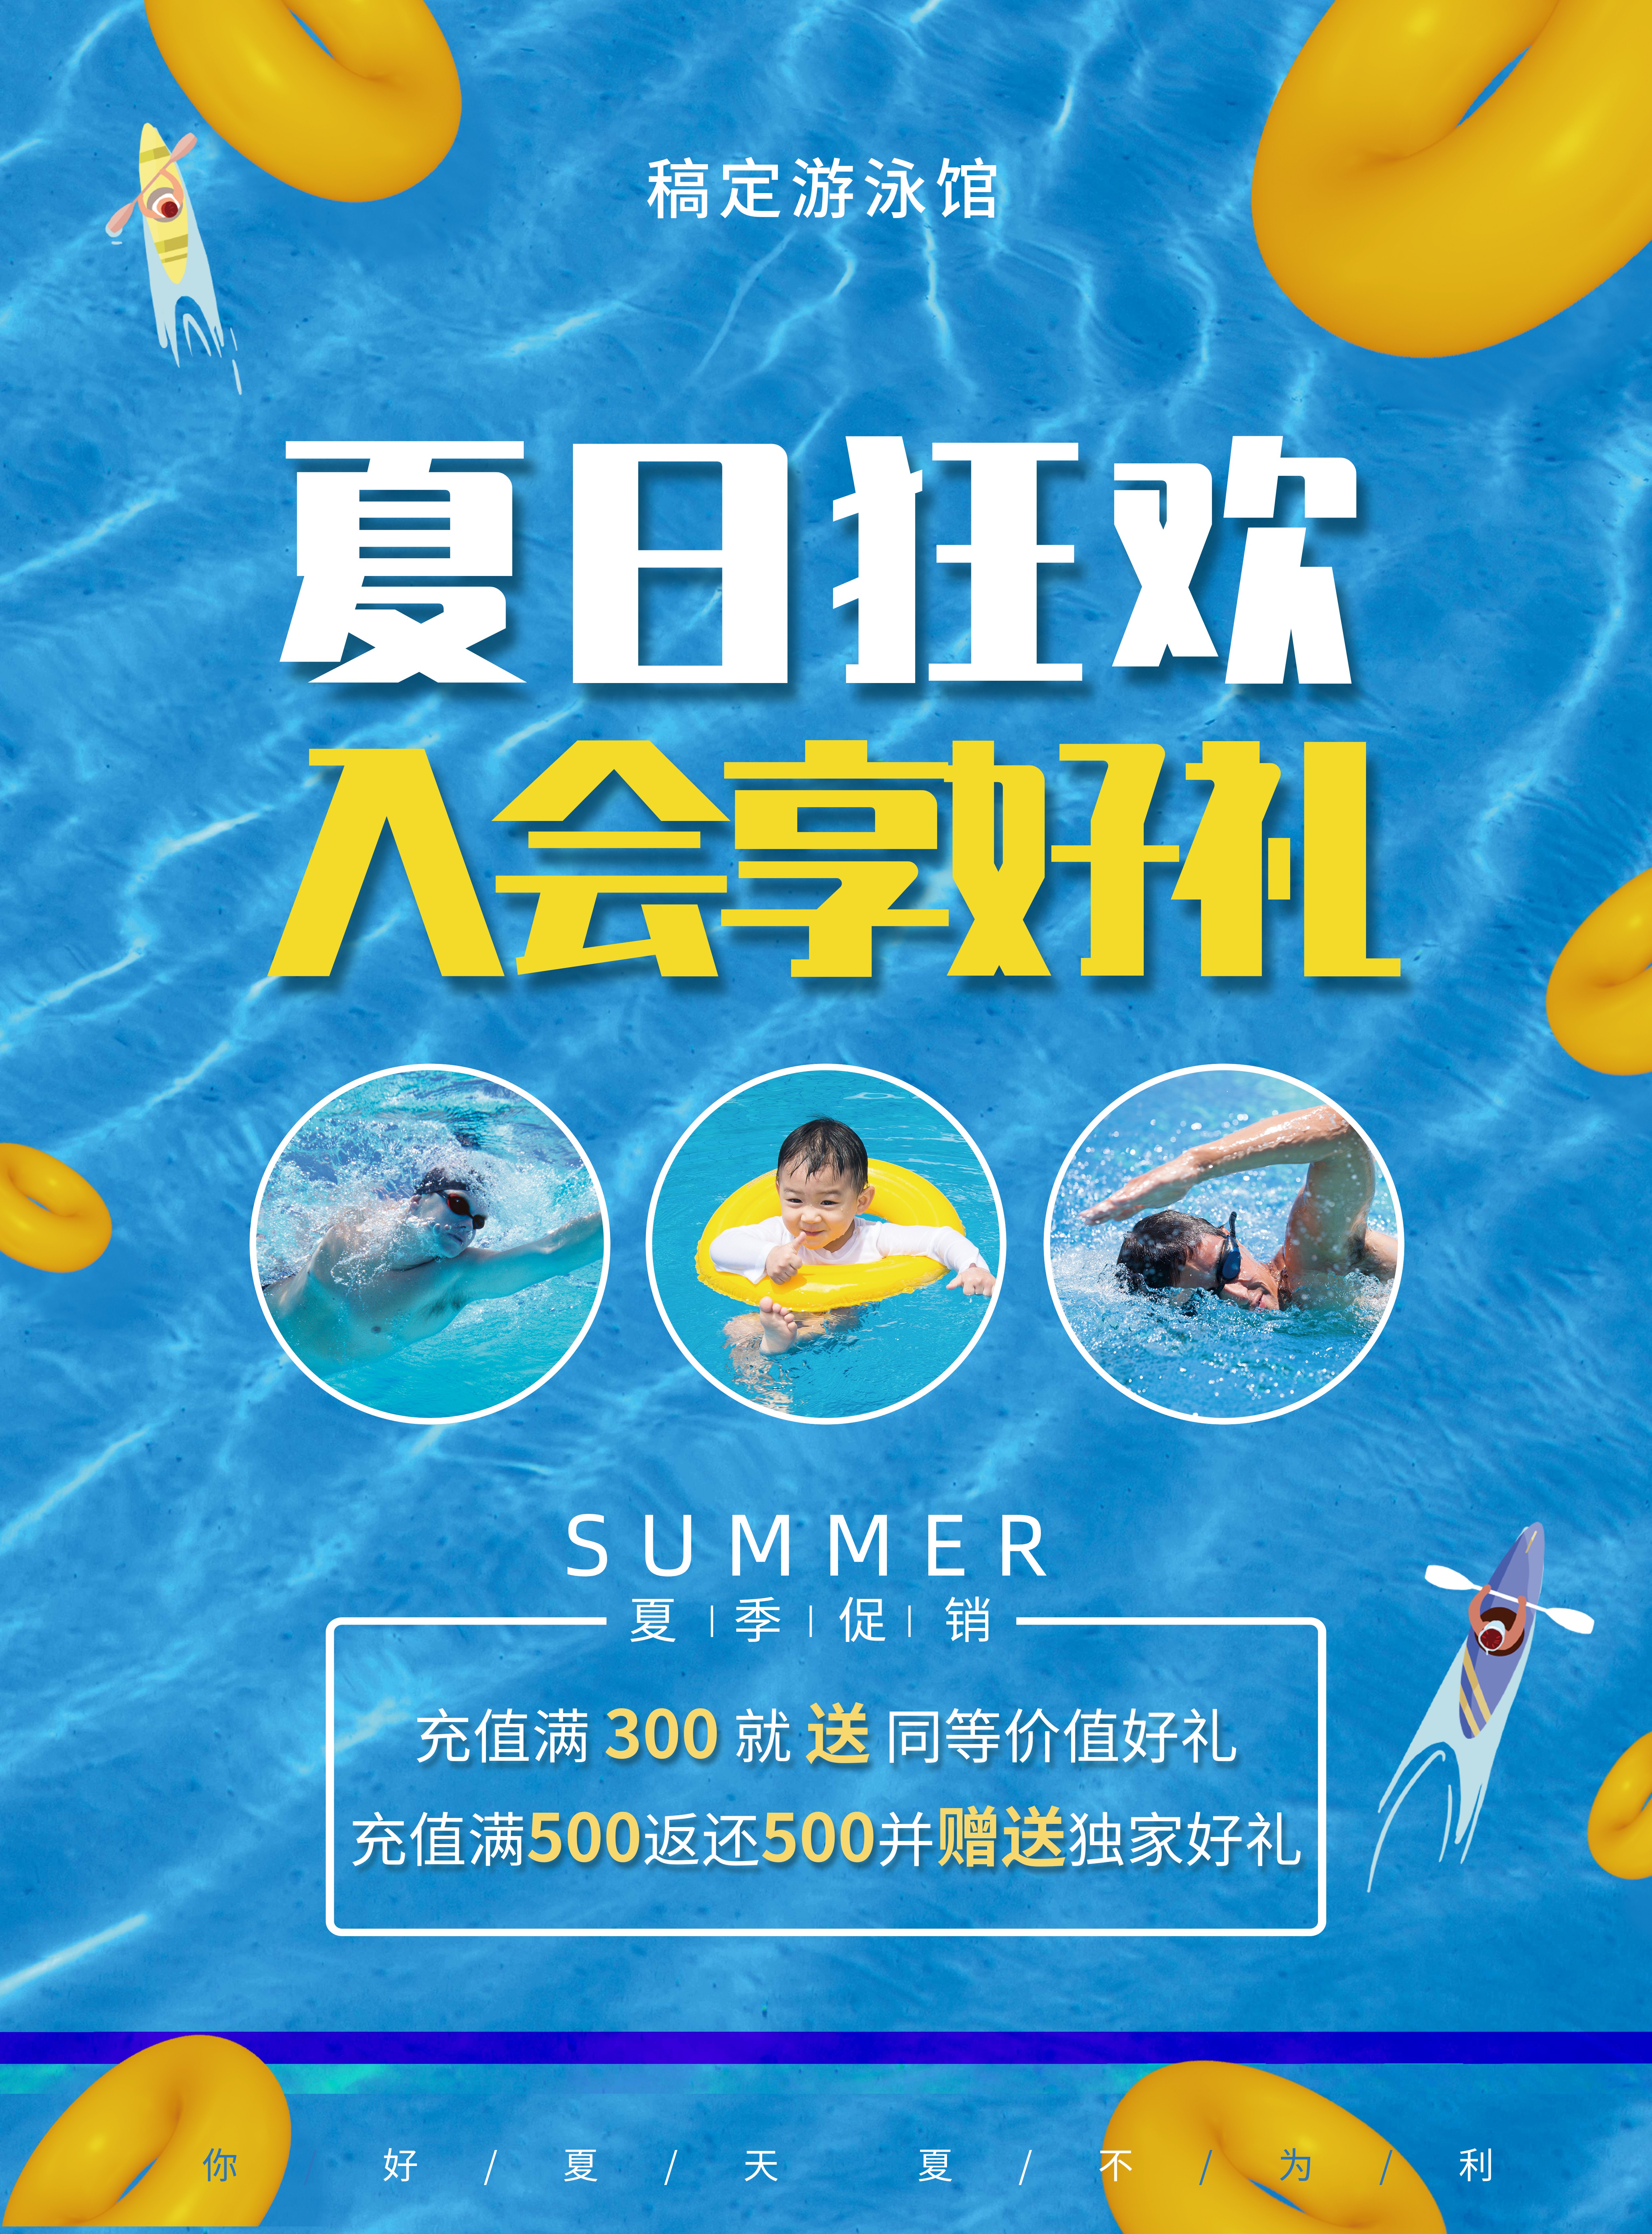 游泳馆夏天卡通游泳培训促销张贴海报预览效果